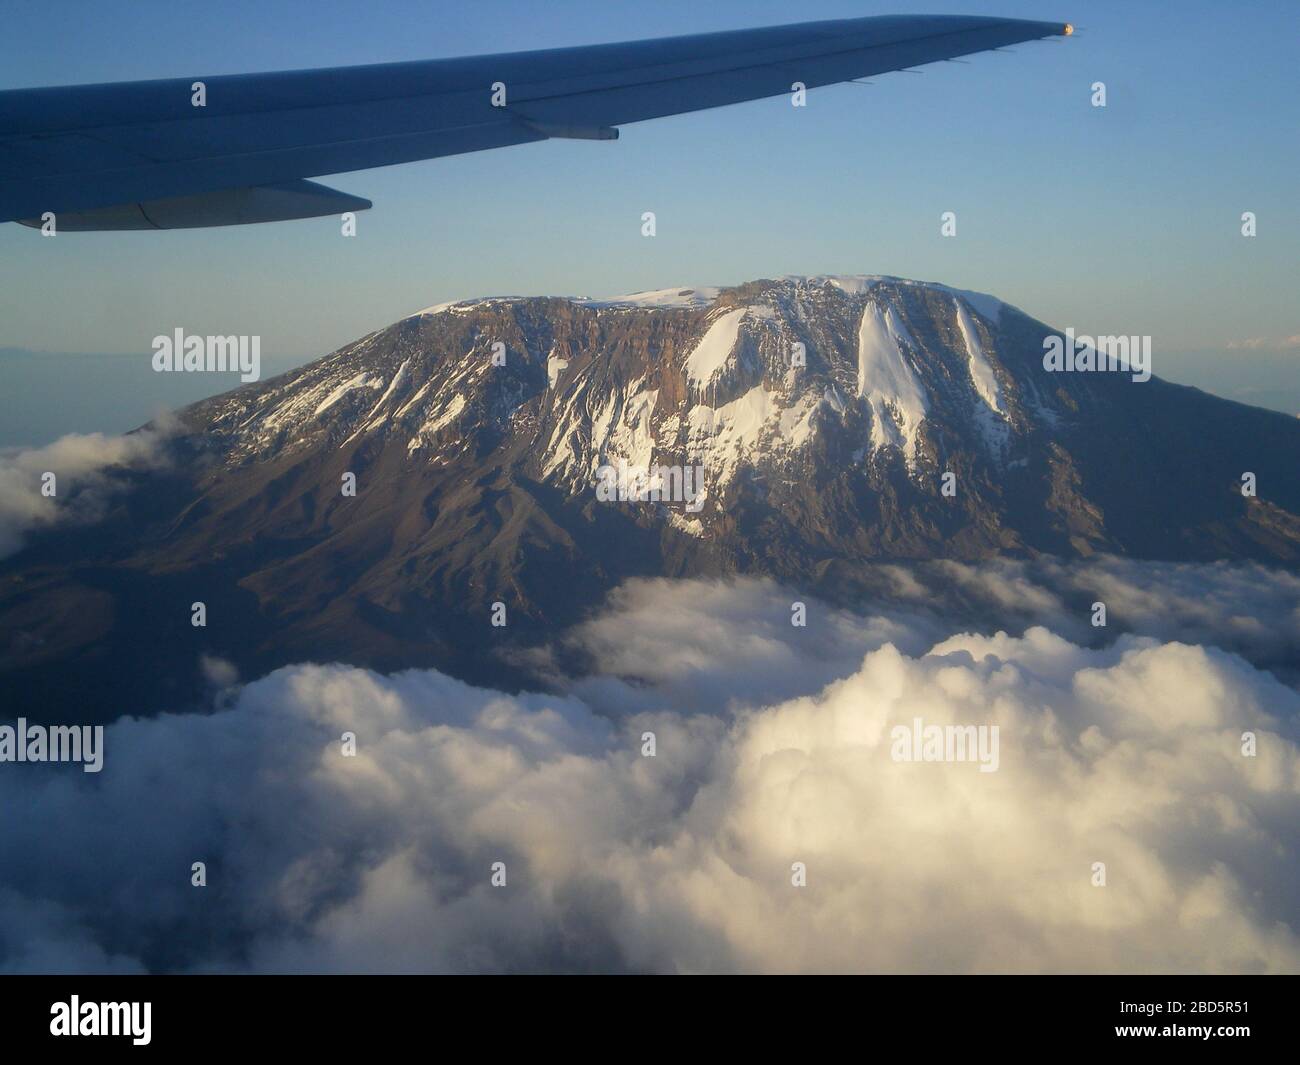 View of Kilimanjaro mountain, Tanzania, Africa Stock Photo